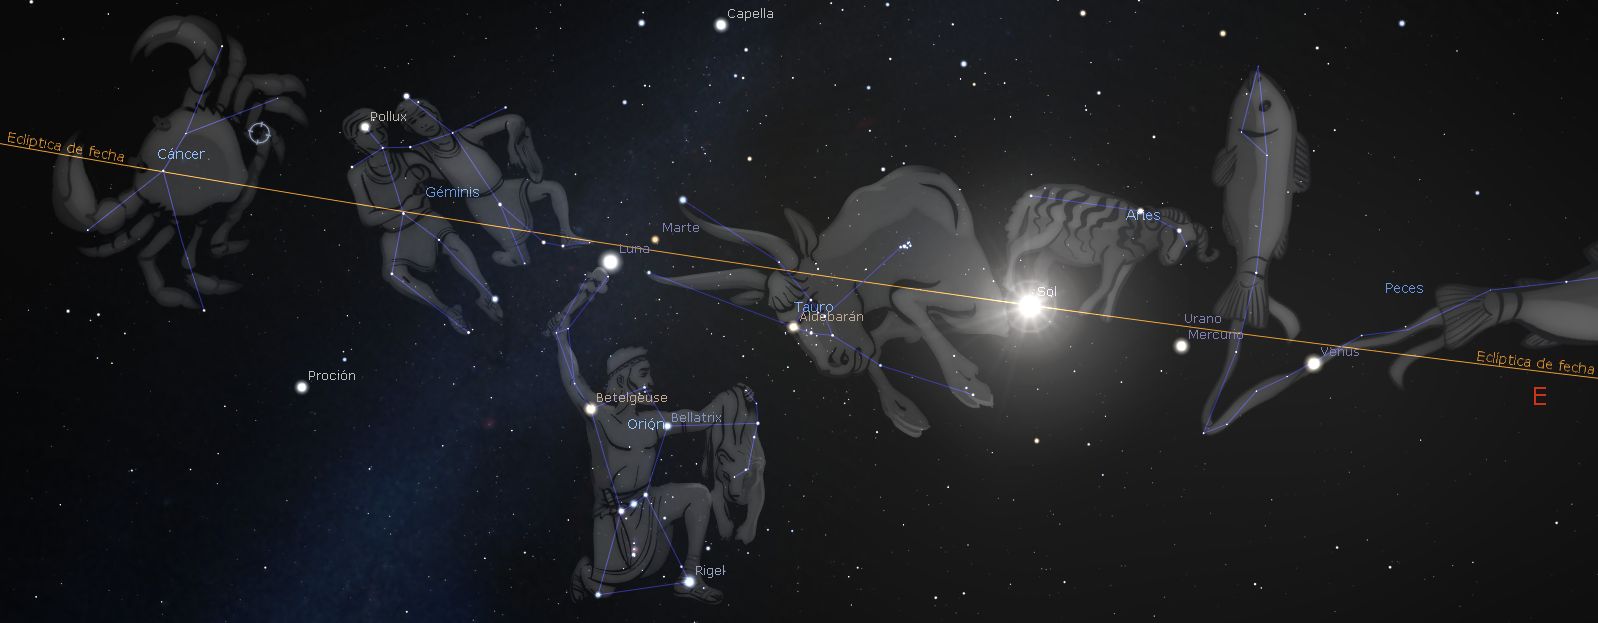 Orión y el misterio de las siete estrellas